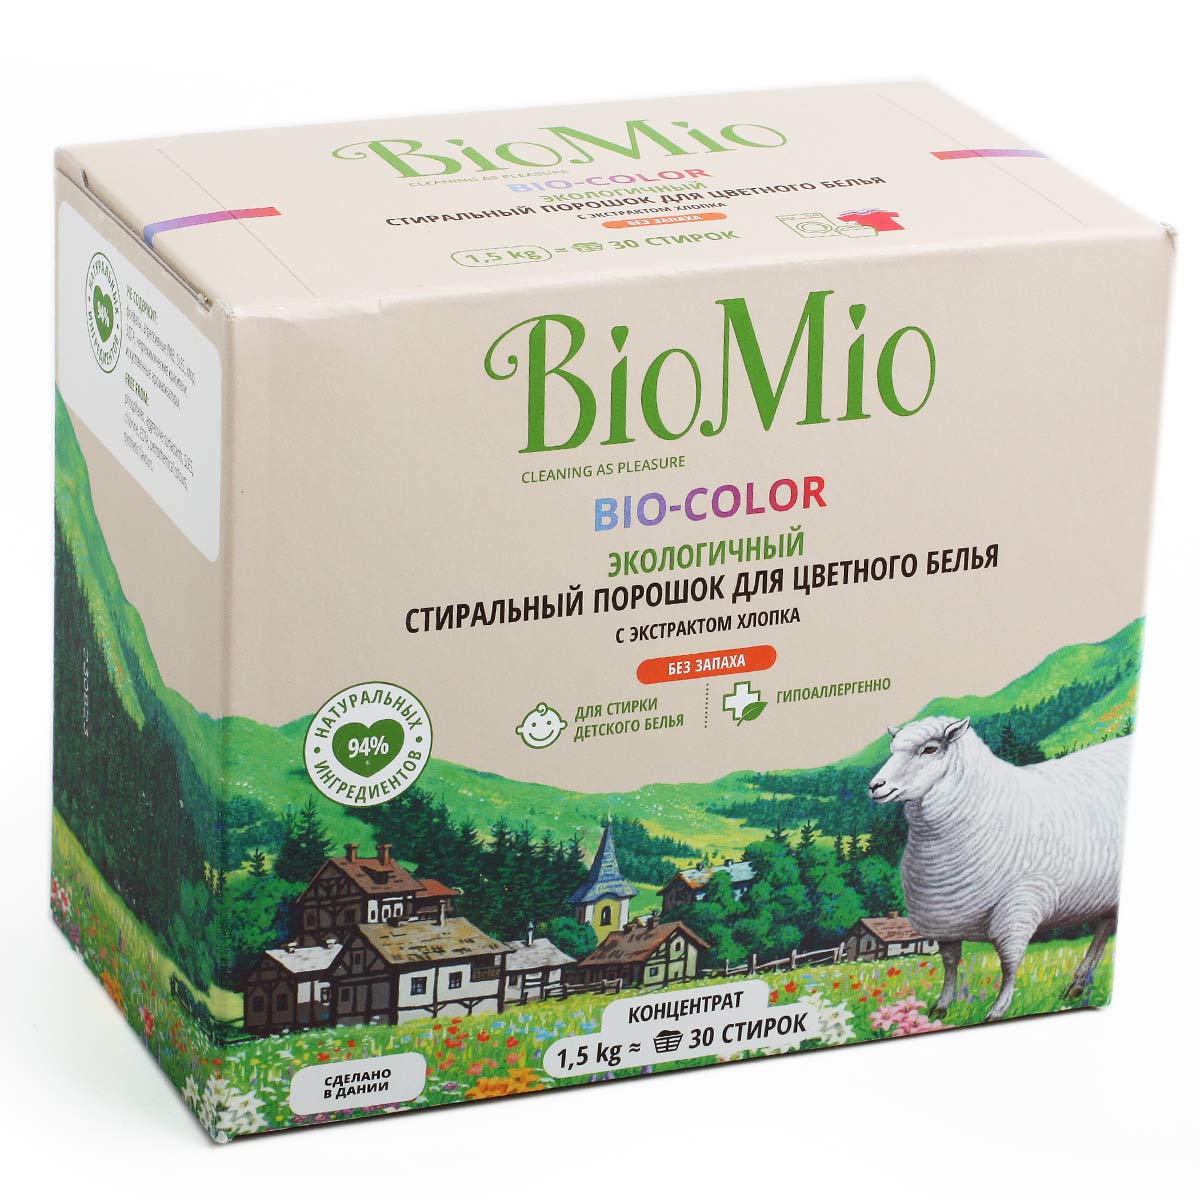 BIO MIO стиральный порошок bio-color с экстрактом хлопка БиоМио 1.5кг